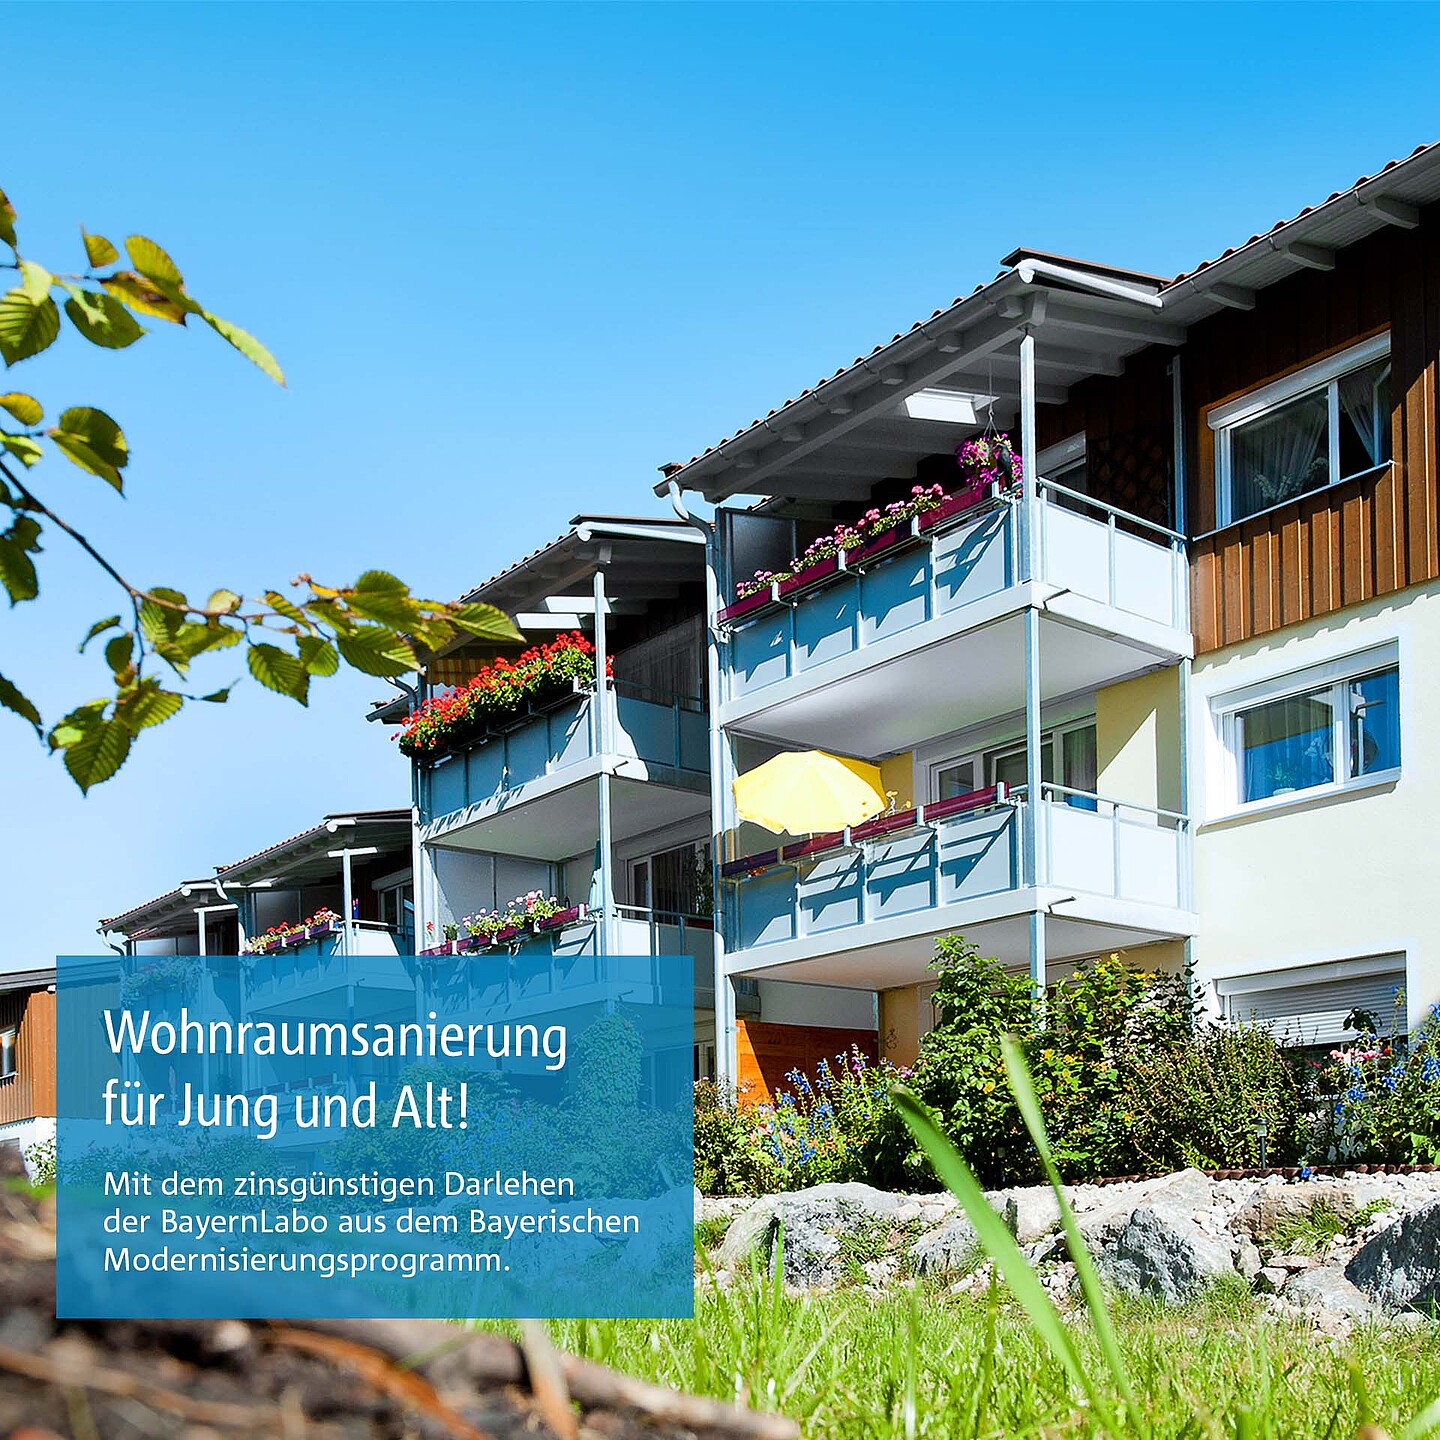 Saniertes Mietshaus: Staatliche Förderung zur Sanierung von Mietwohnungen und Pflegeplätzen in Bayern